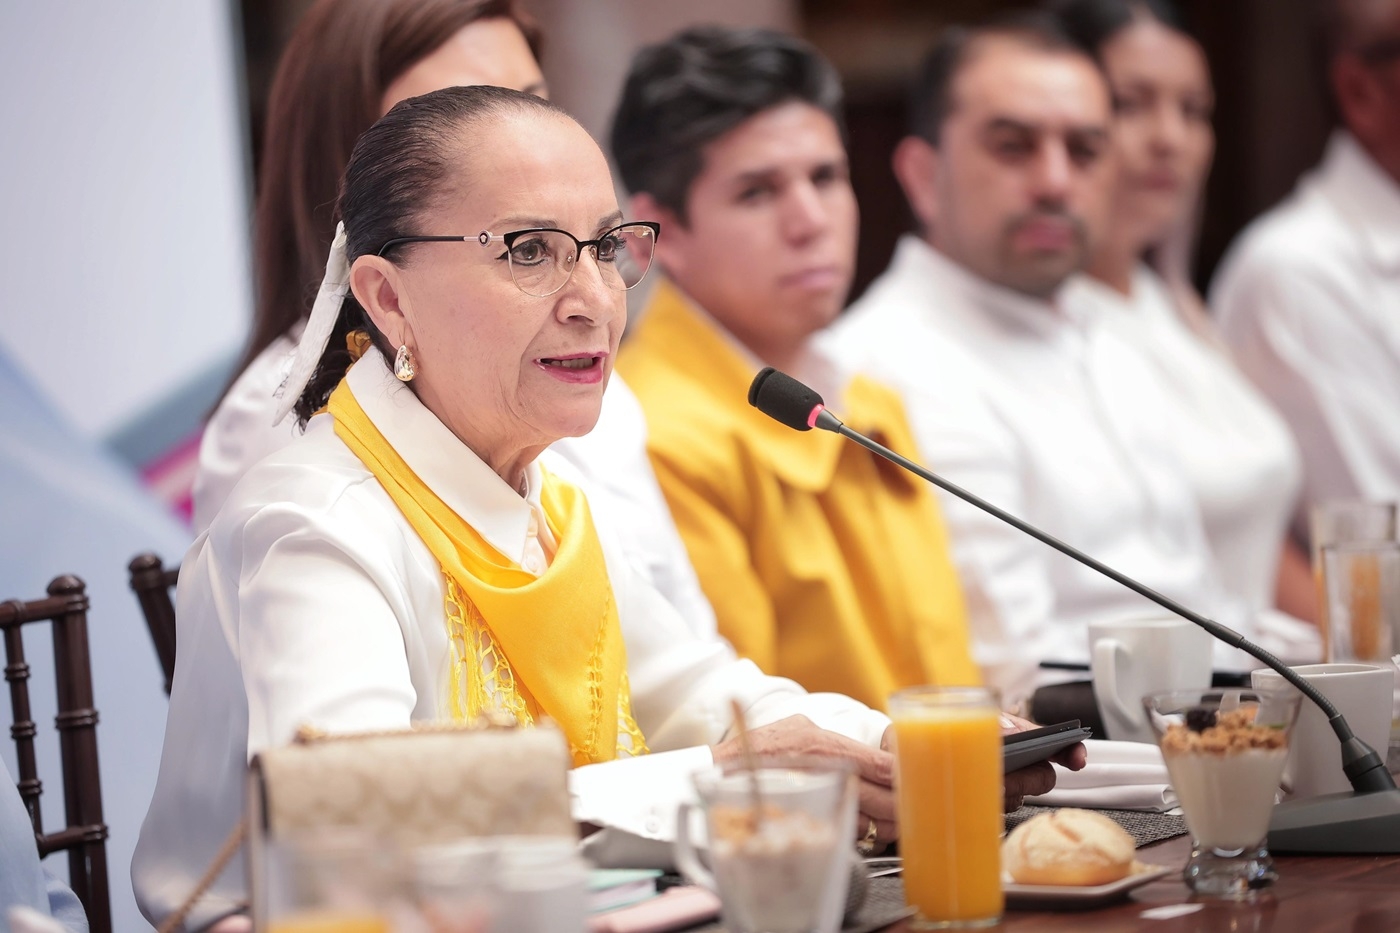 Convoca Julieta Gallardo a Pacto de Civilidad y Concordia al arrancar su campaña como candidata a diputada local por Distrito de Puruándiro